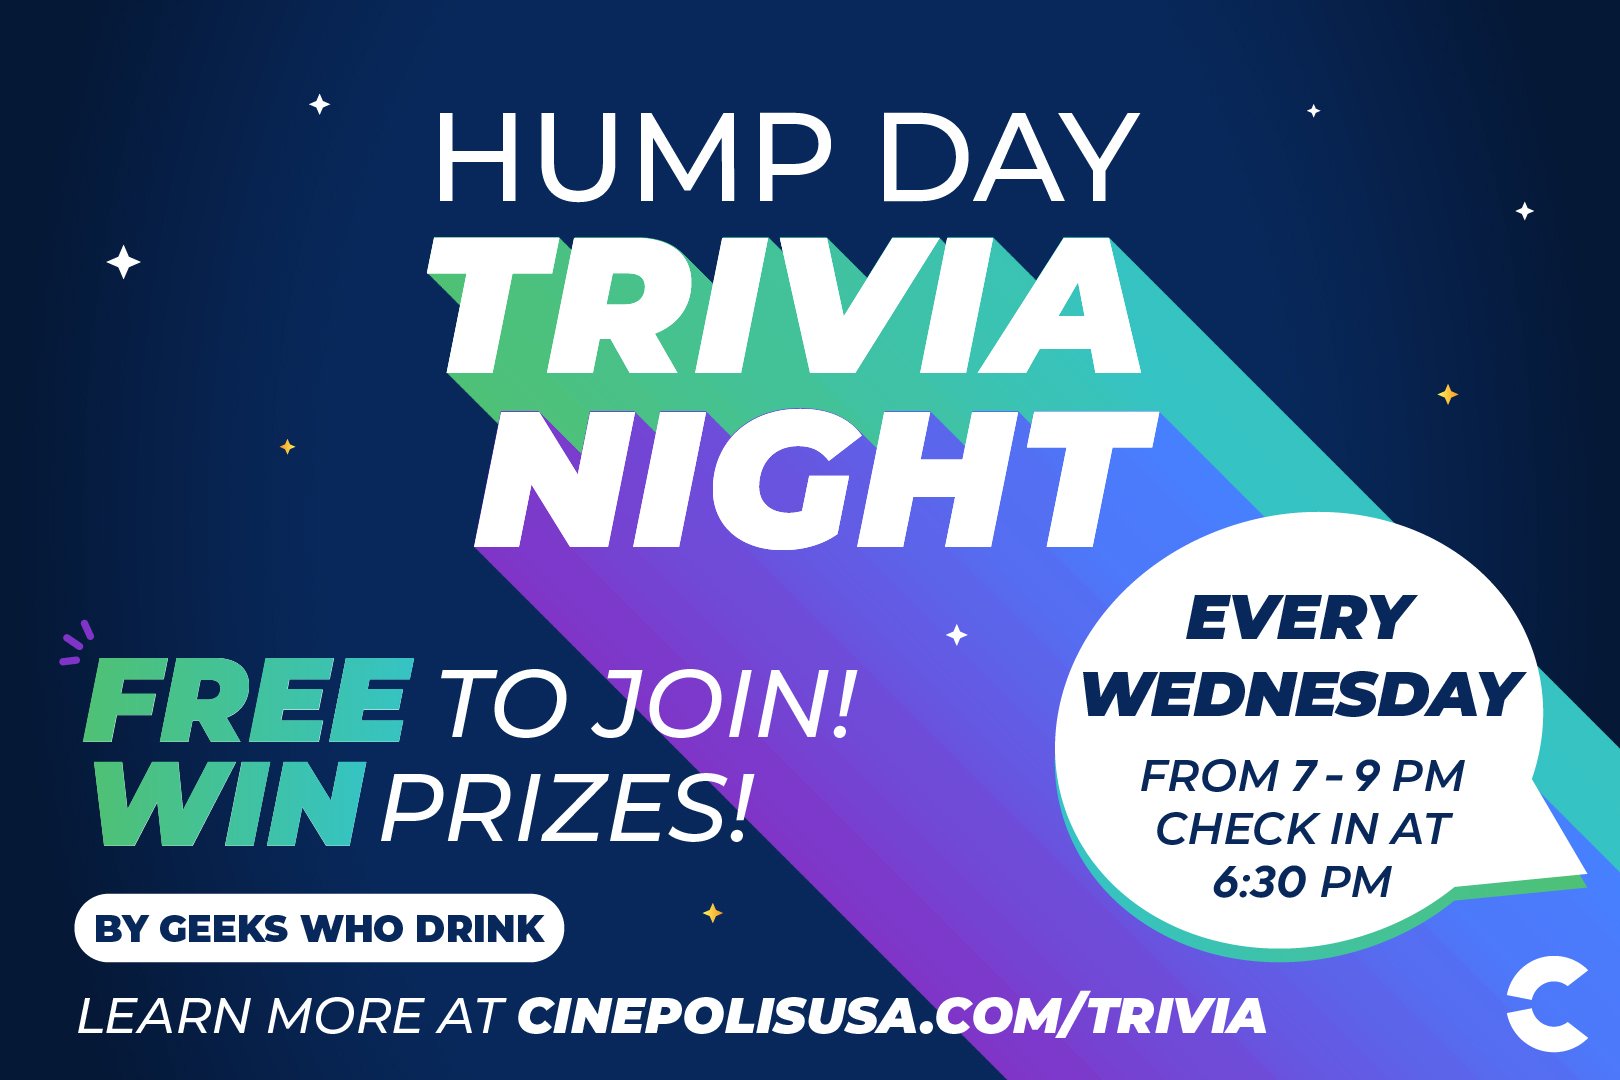 Free Trivia Night at Cinepolis